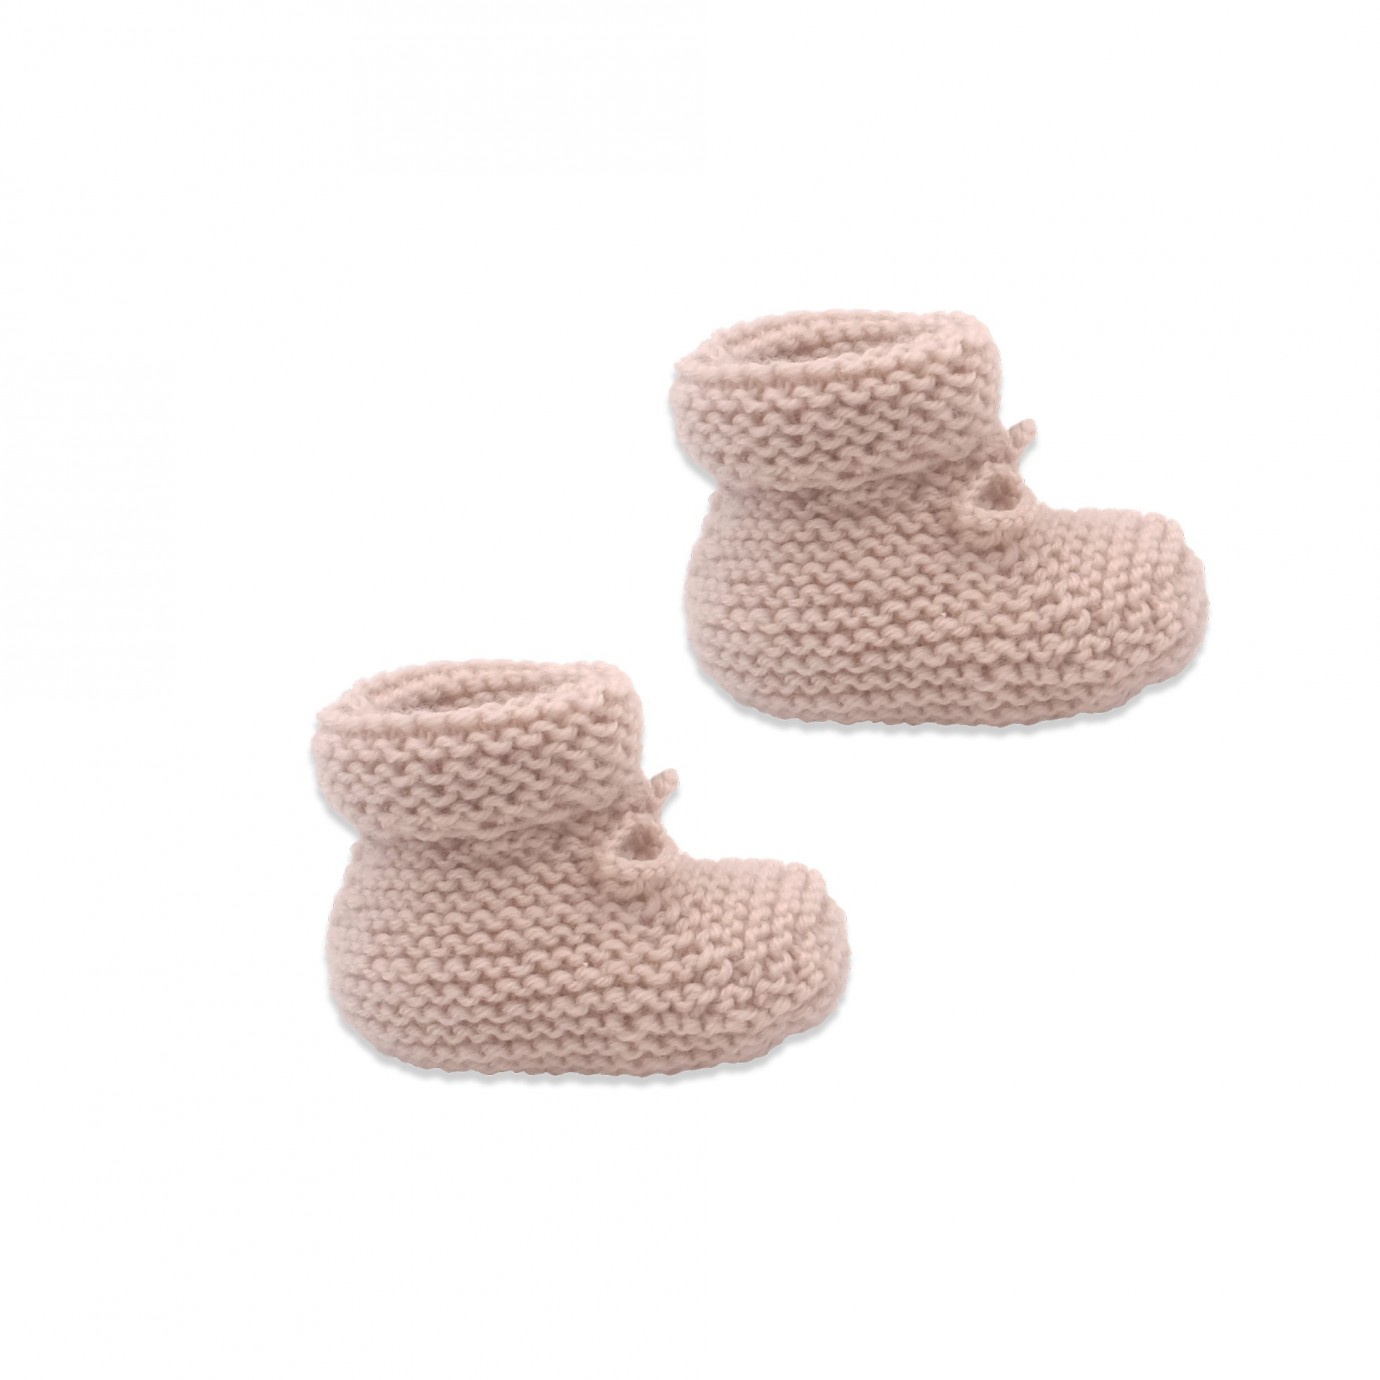 chaussons bébé laine rose,cadeau bebe naissance tricot.